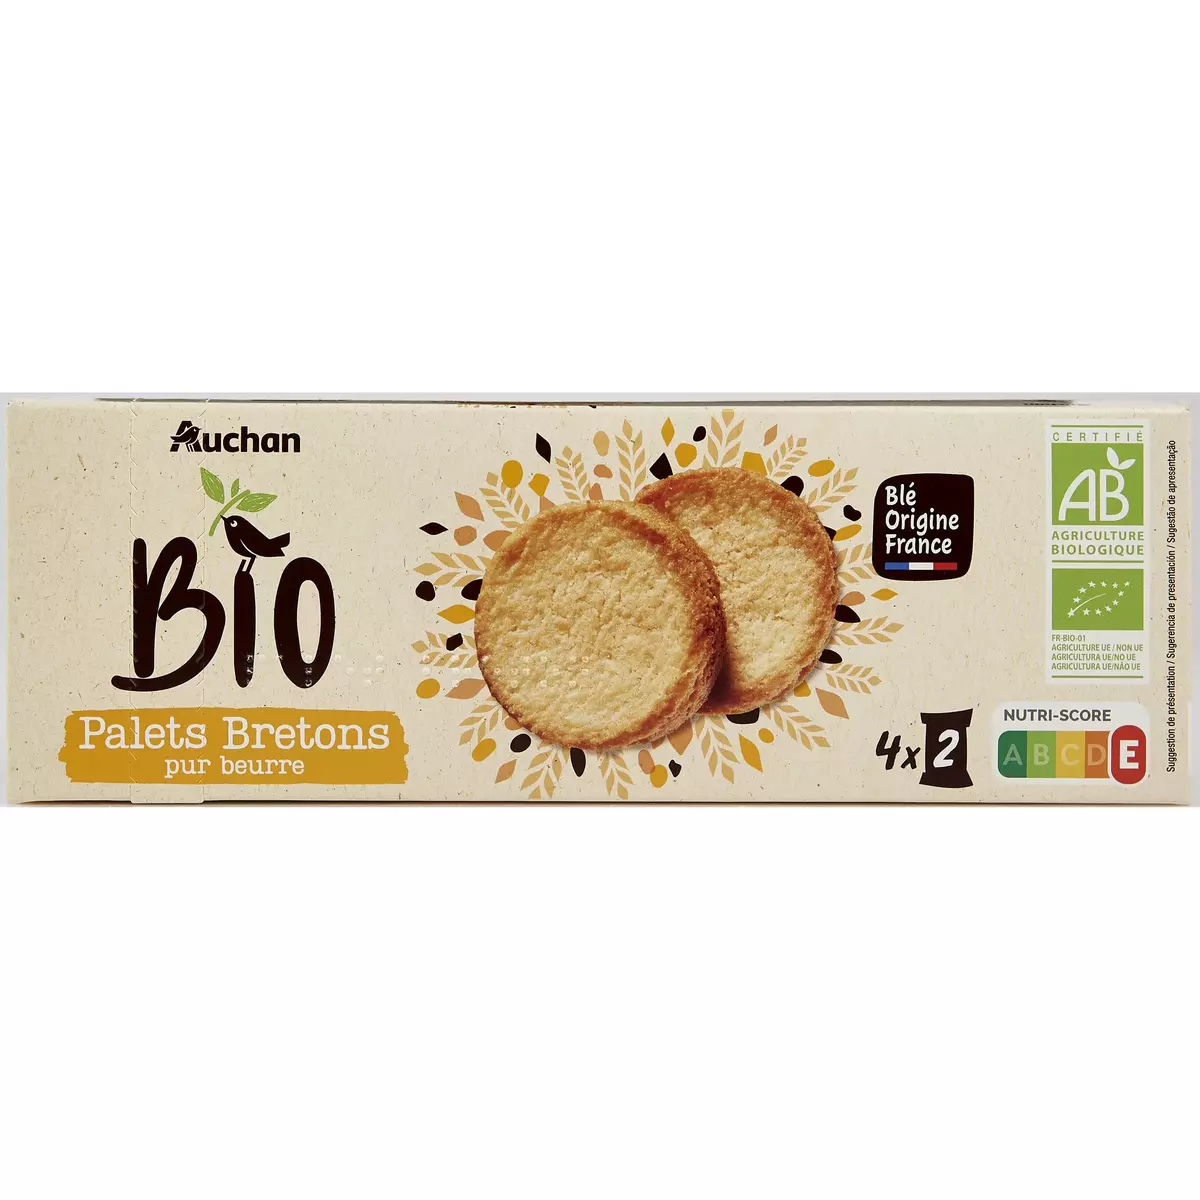 Auchan palets bretons pur beurre 125g